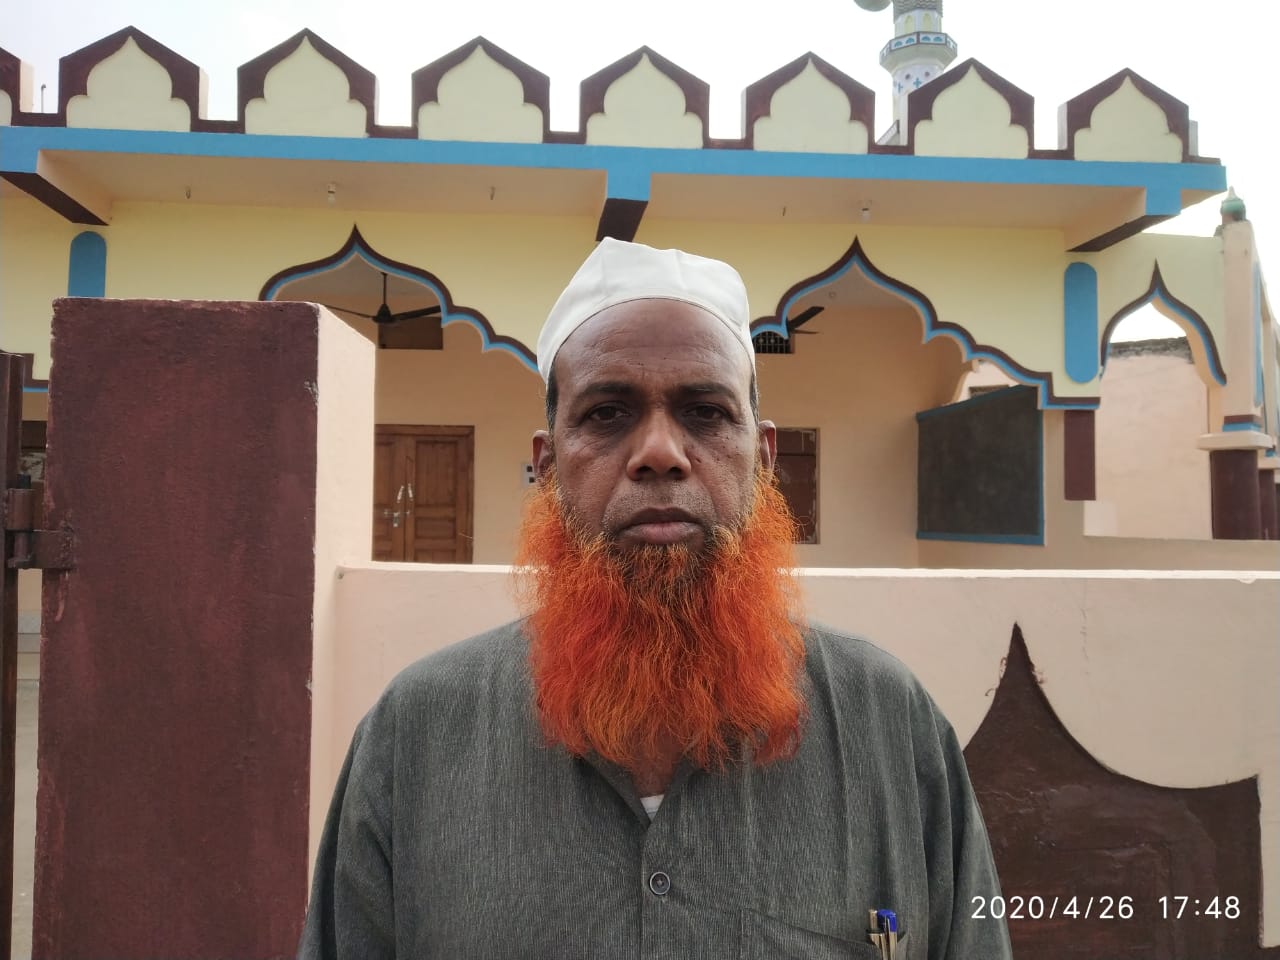 मुस्लिम समाज कोरोना संक्रमण को लेकर नियमों का पालन करें: हाफिज सईद अहमद | New India Times